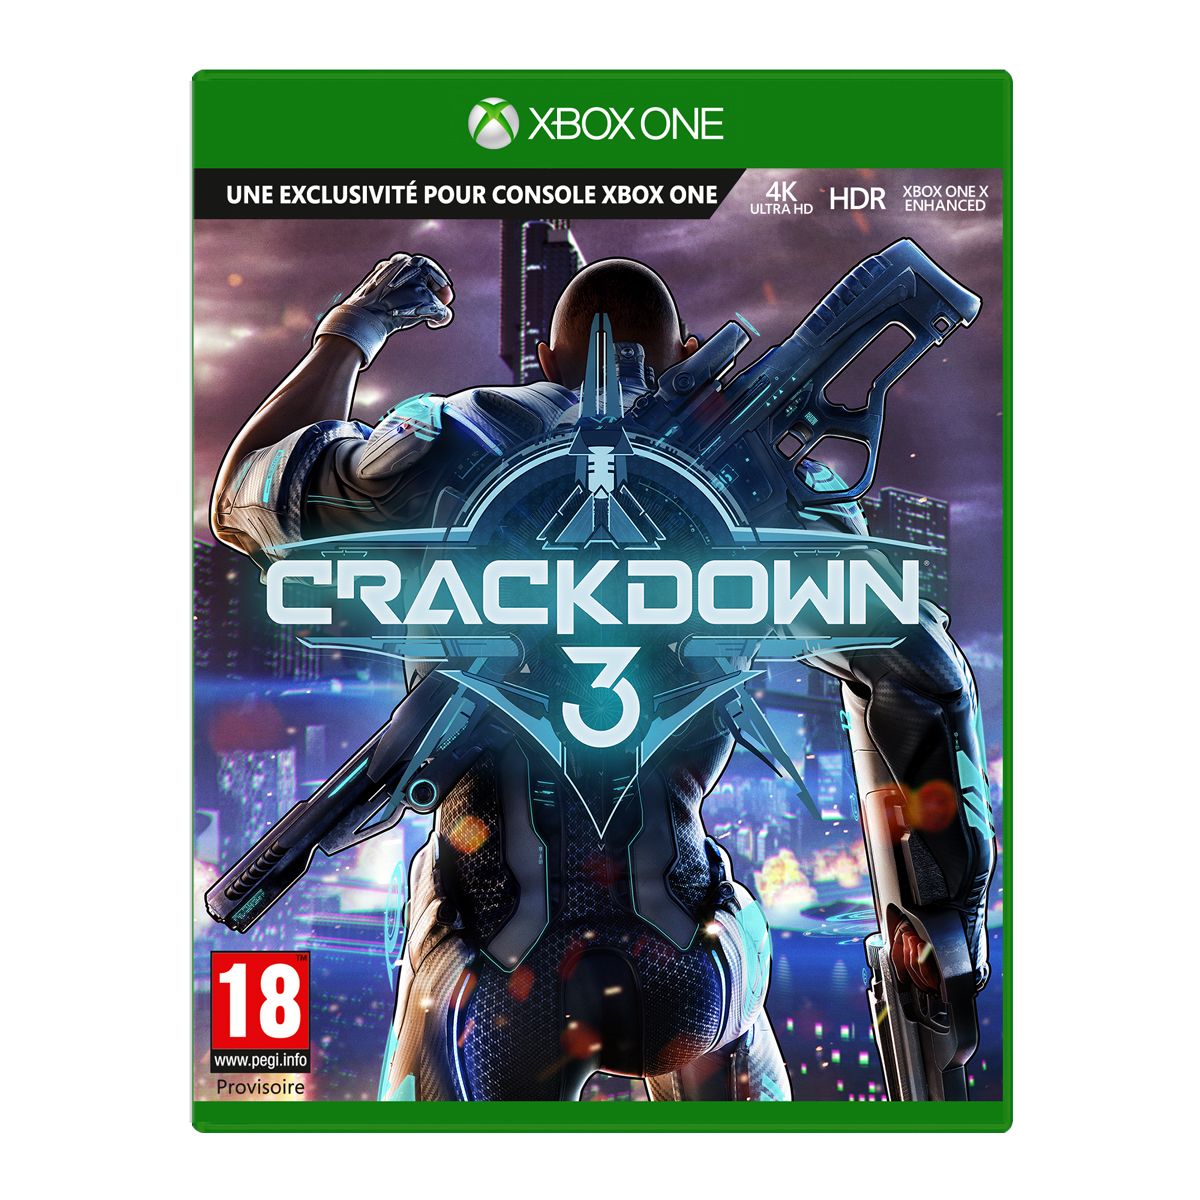 [E32019] Crackdown 3